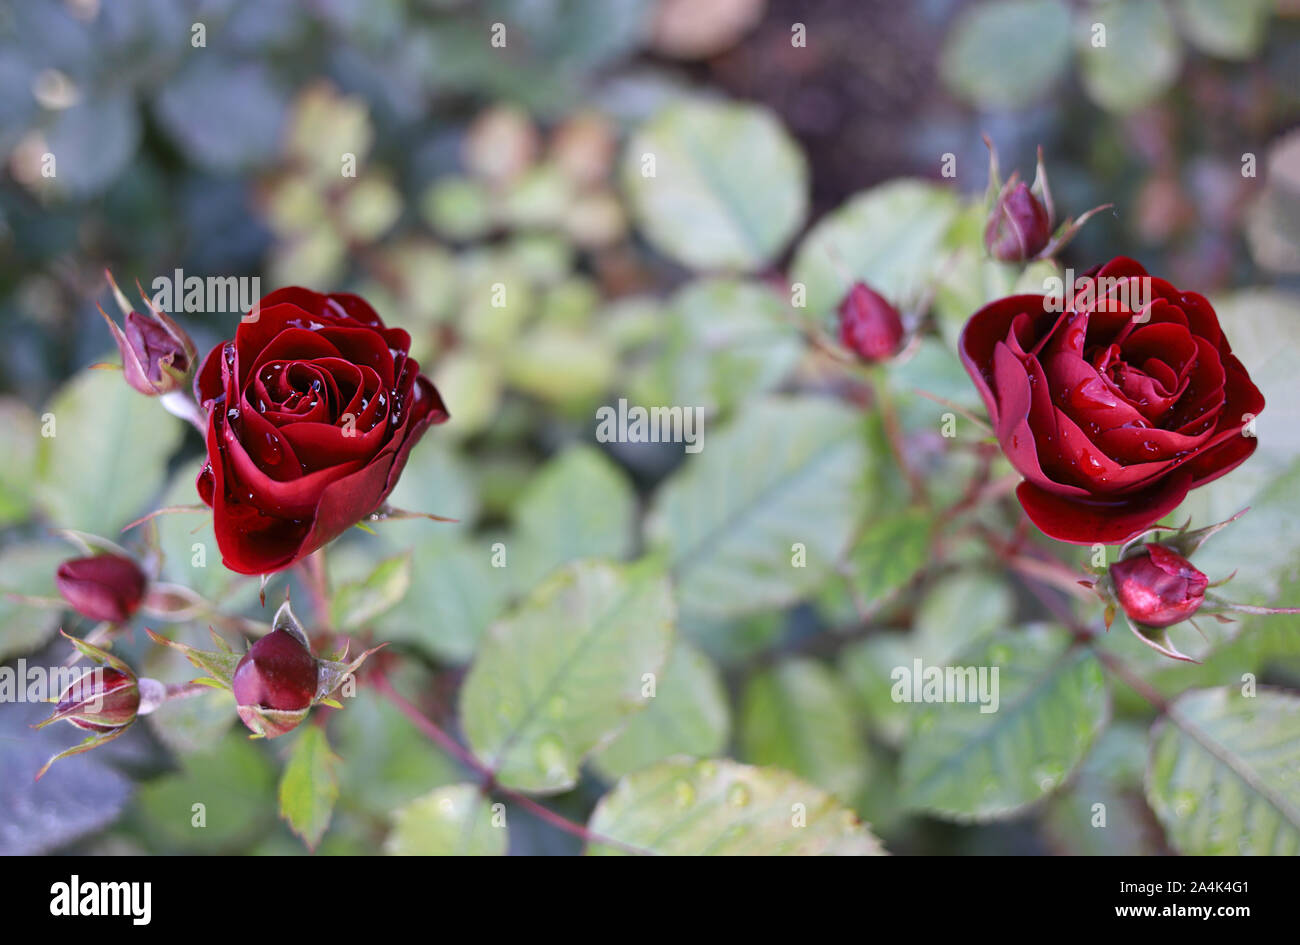 Close up de belles roses rouges sang dans le jardin. Gouttes de pluie comme cristaux sur les pétales. Photo de fond romantique dans de douces couleurs pastel. Weddin Banque D'Images